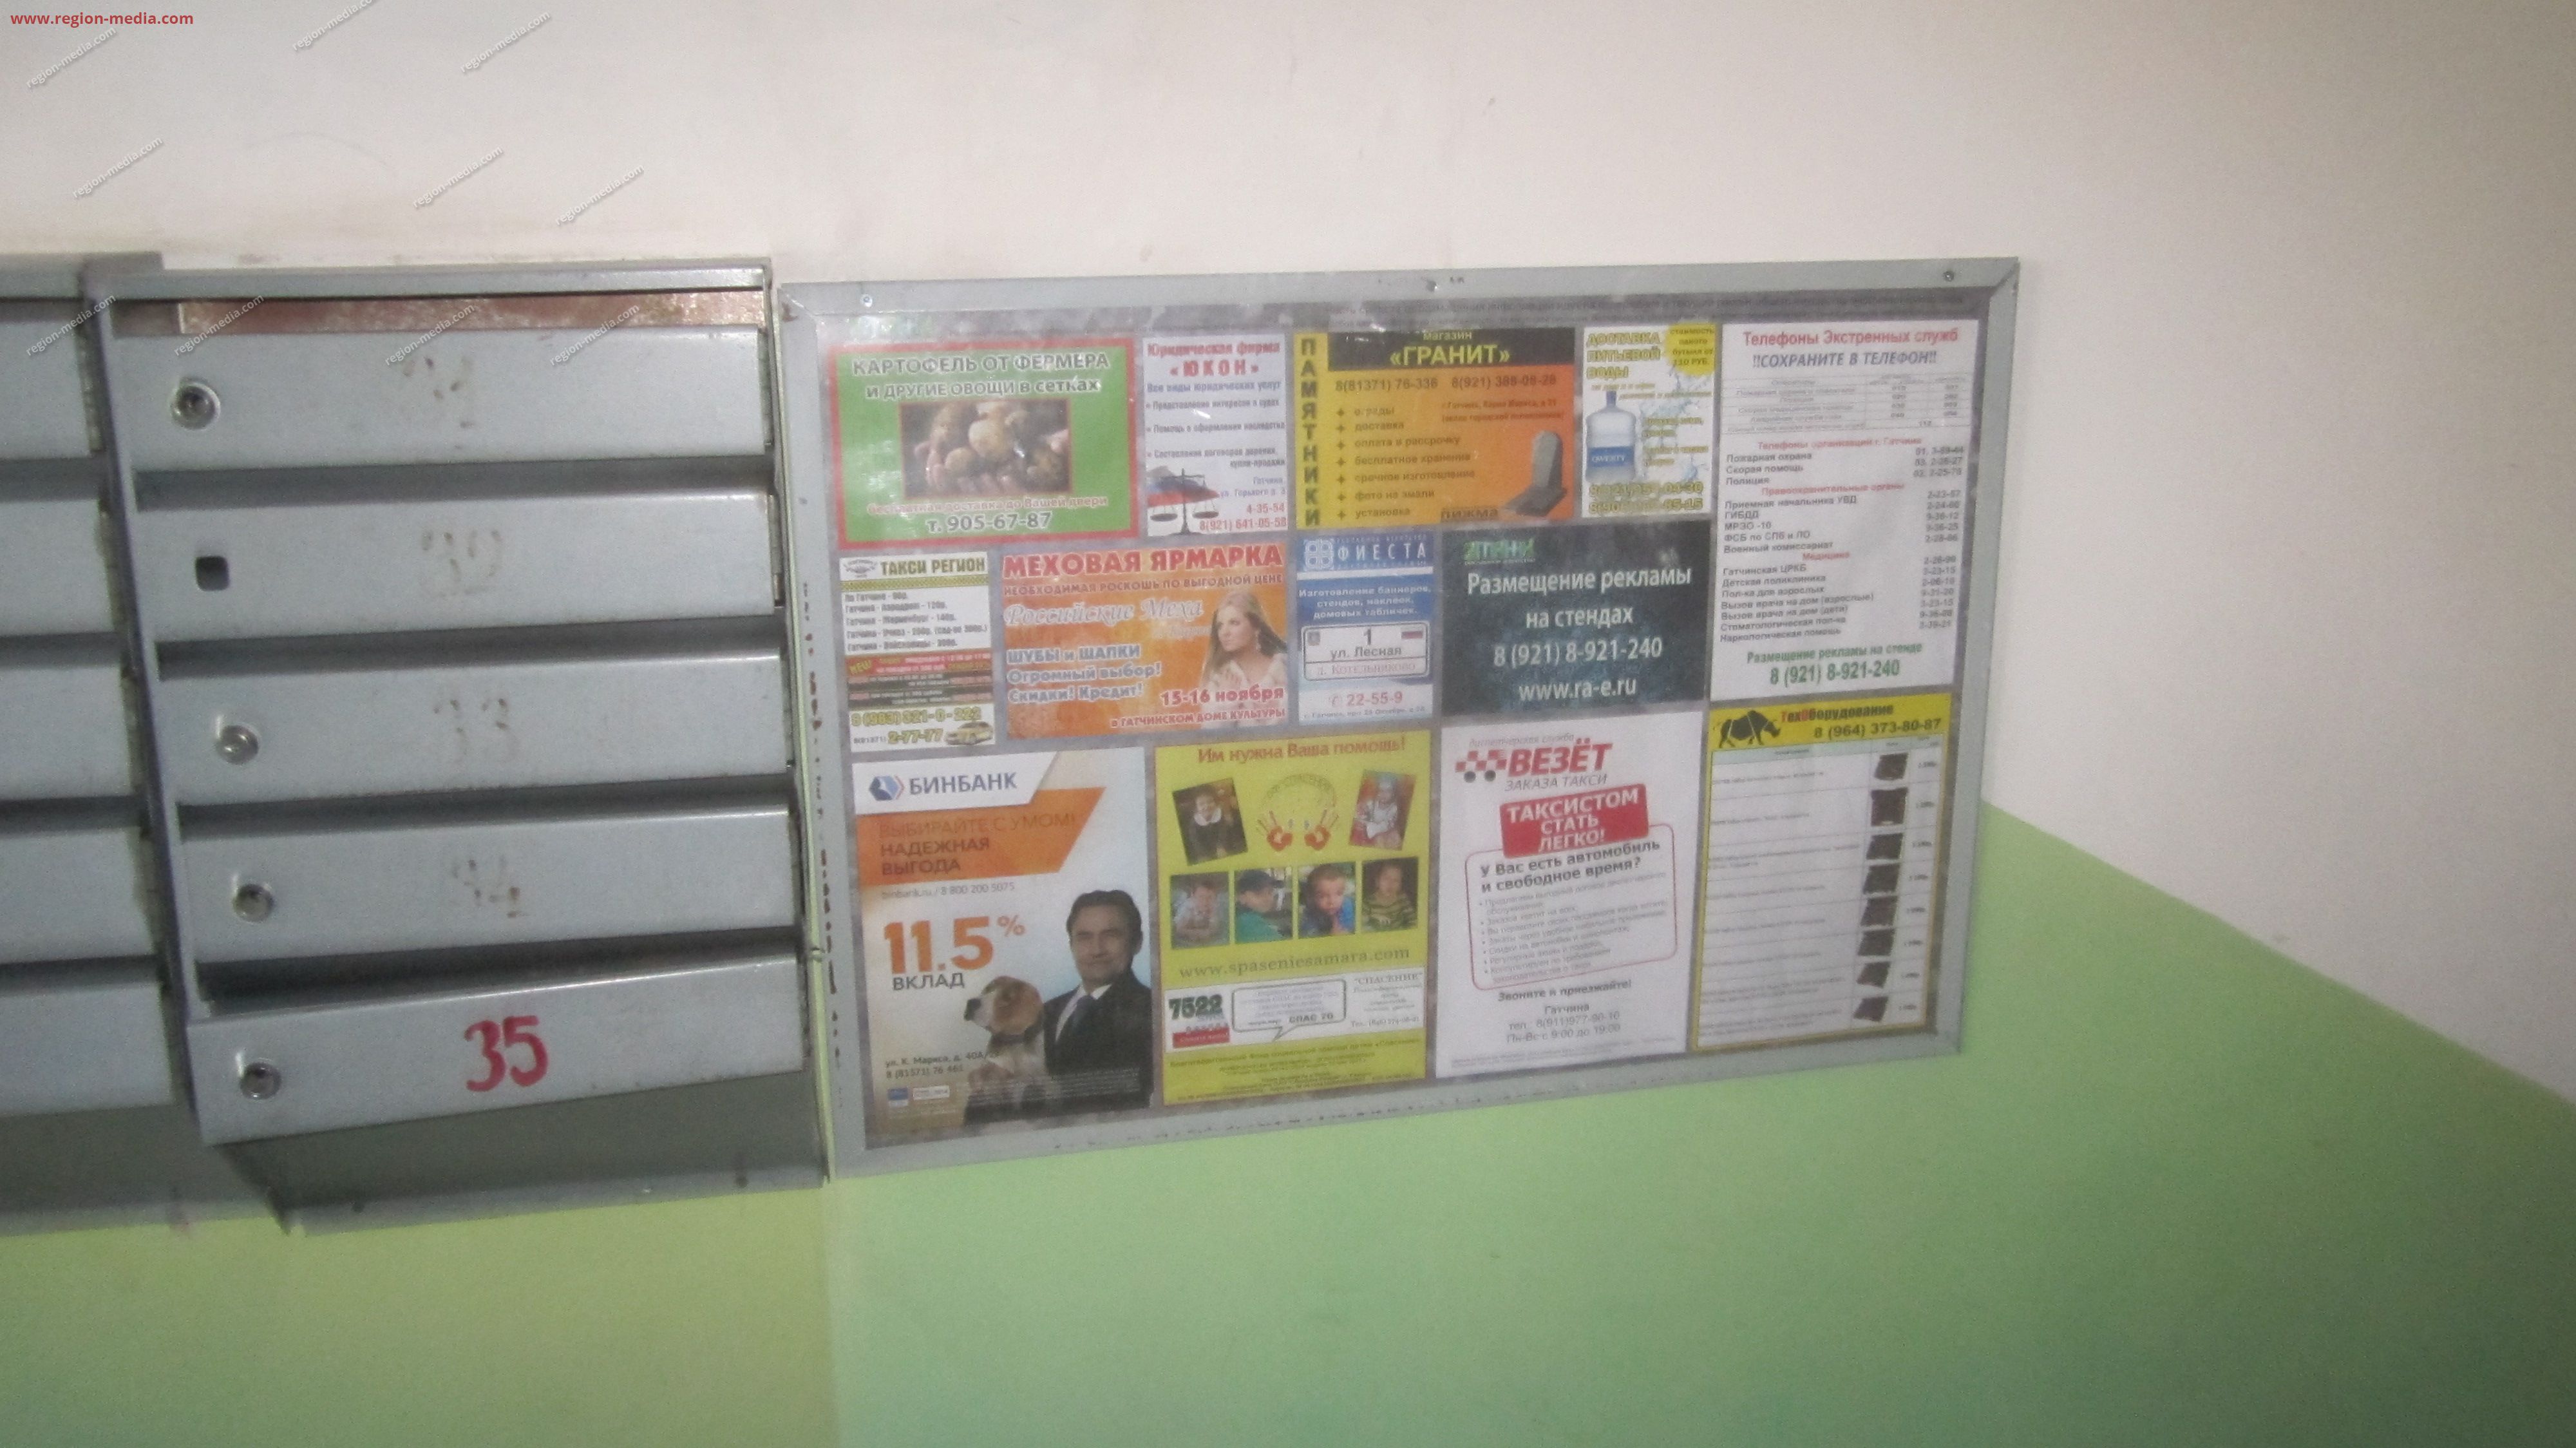 Размещение рекламы в подъезде компании "Бинбанк" в городе гатчина